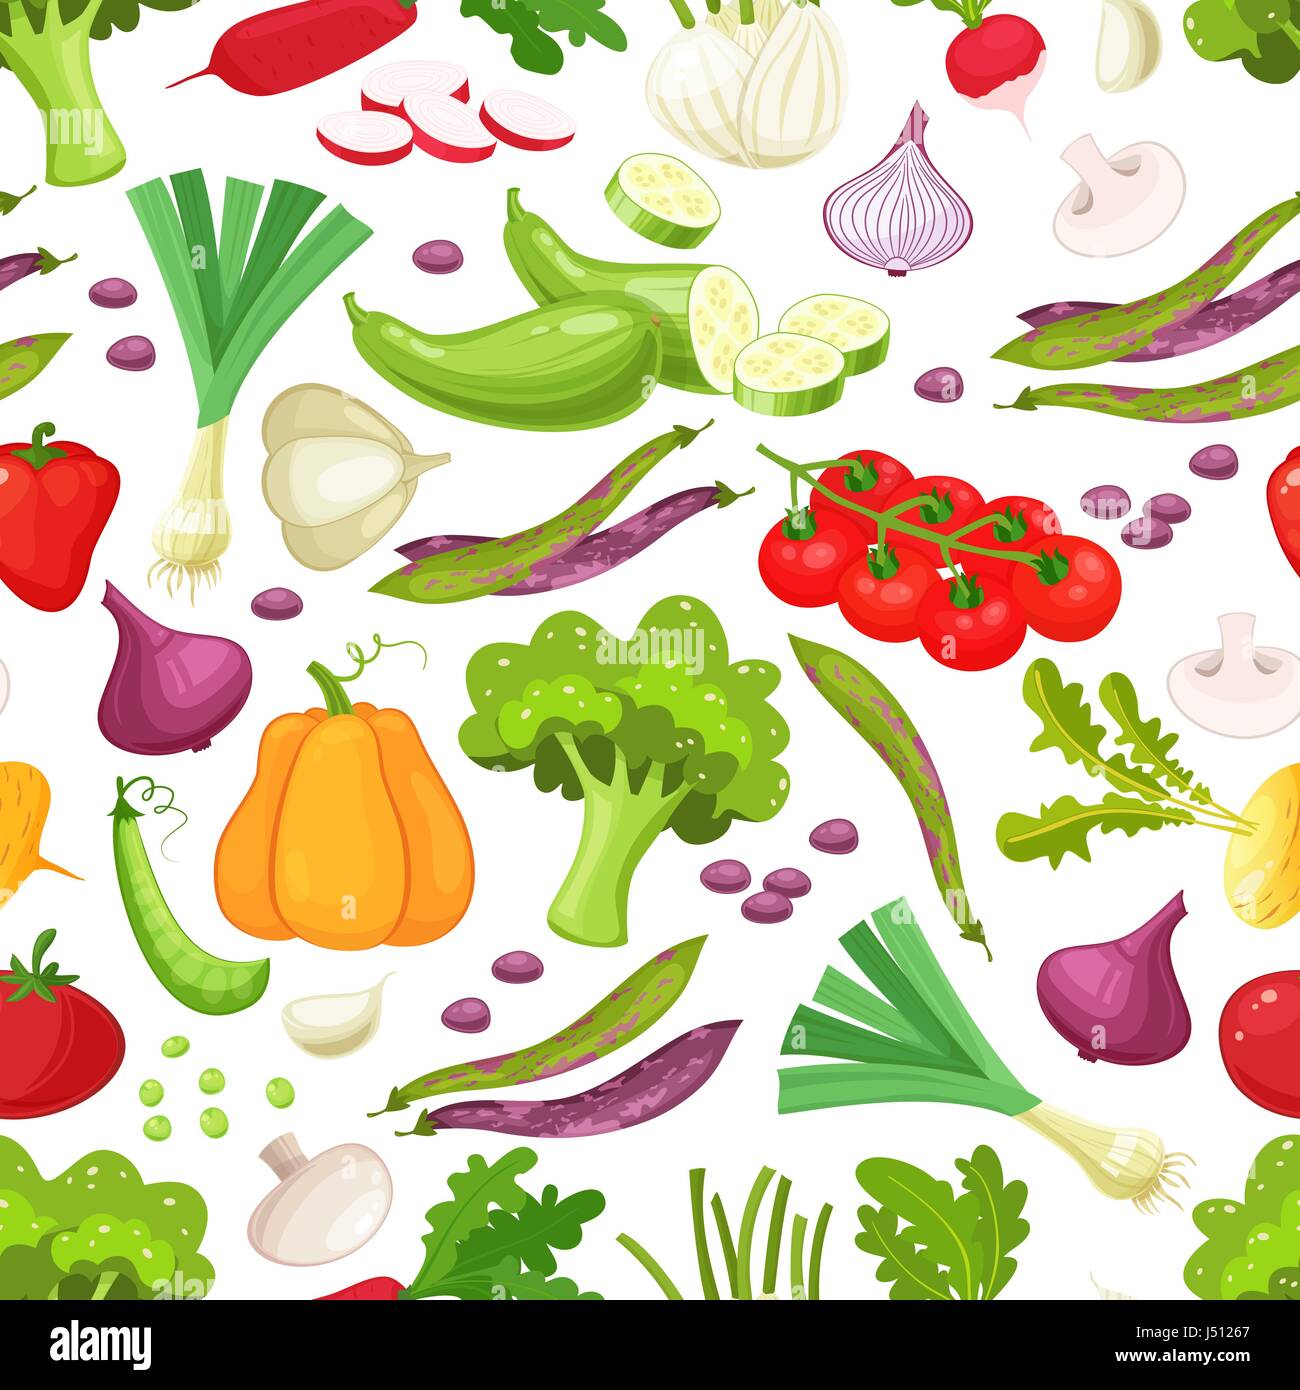 Rohes Gemüse mit in Scheiben geschnittenen Paprika Auberginen Knoblauch Pilz-Zucchini-Tomaten-Zwiebel-Gurken-Vektor-Illustration. Nahtlose Muster auf weißem Hintergrund, Gemüse-Illustrationen Stock Vektor